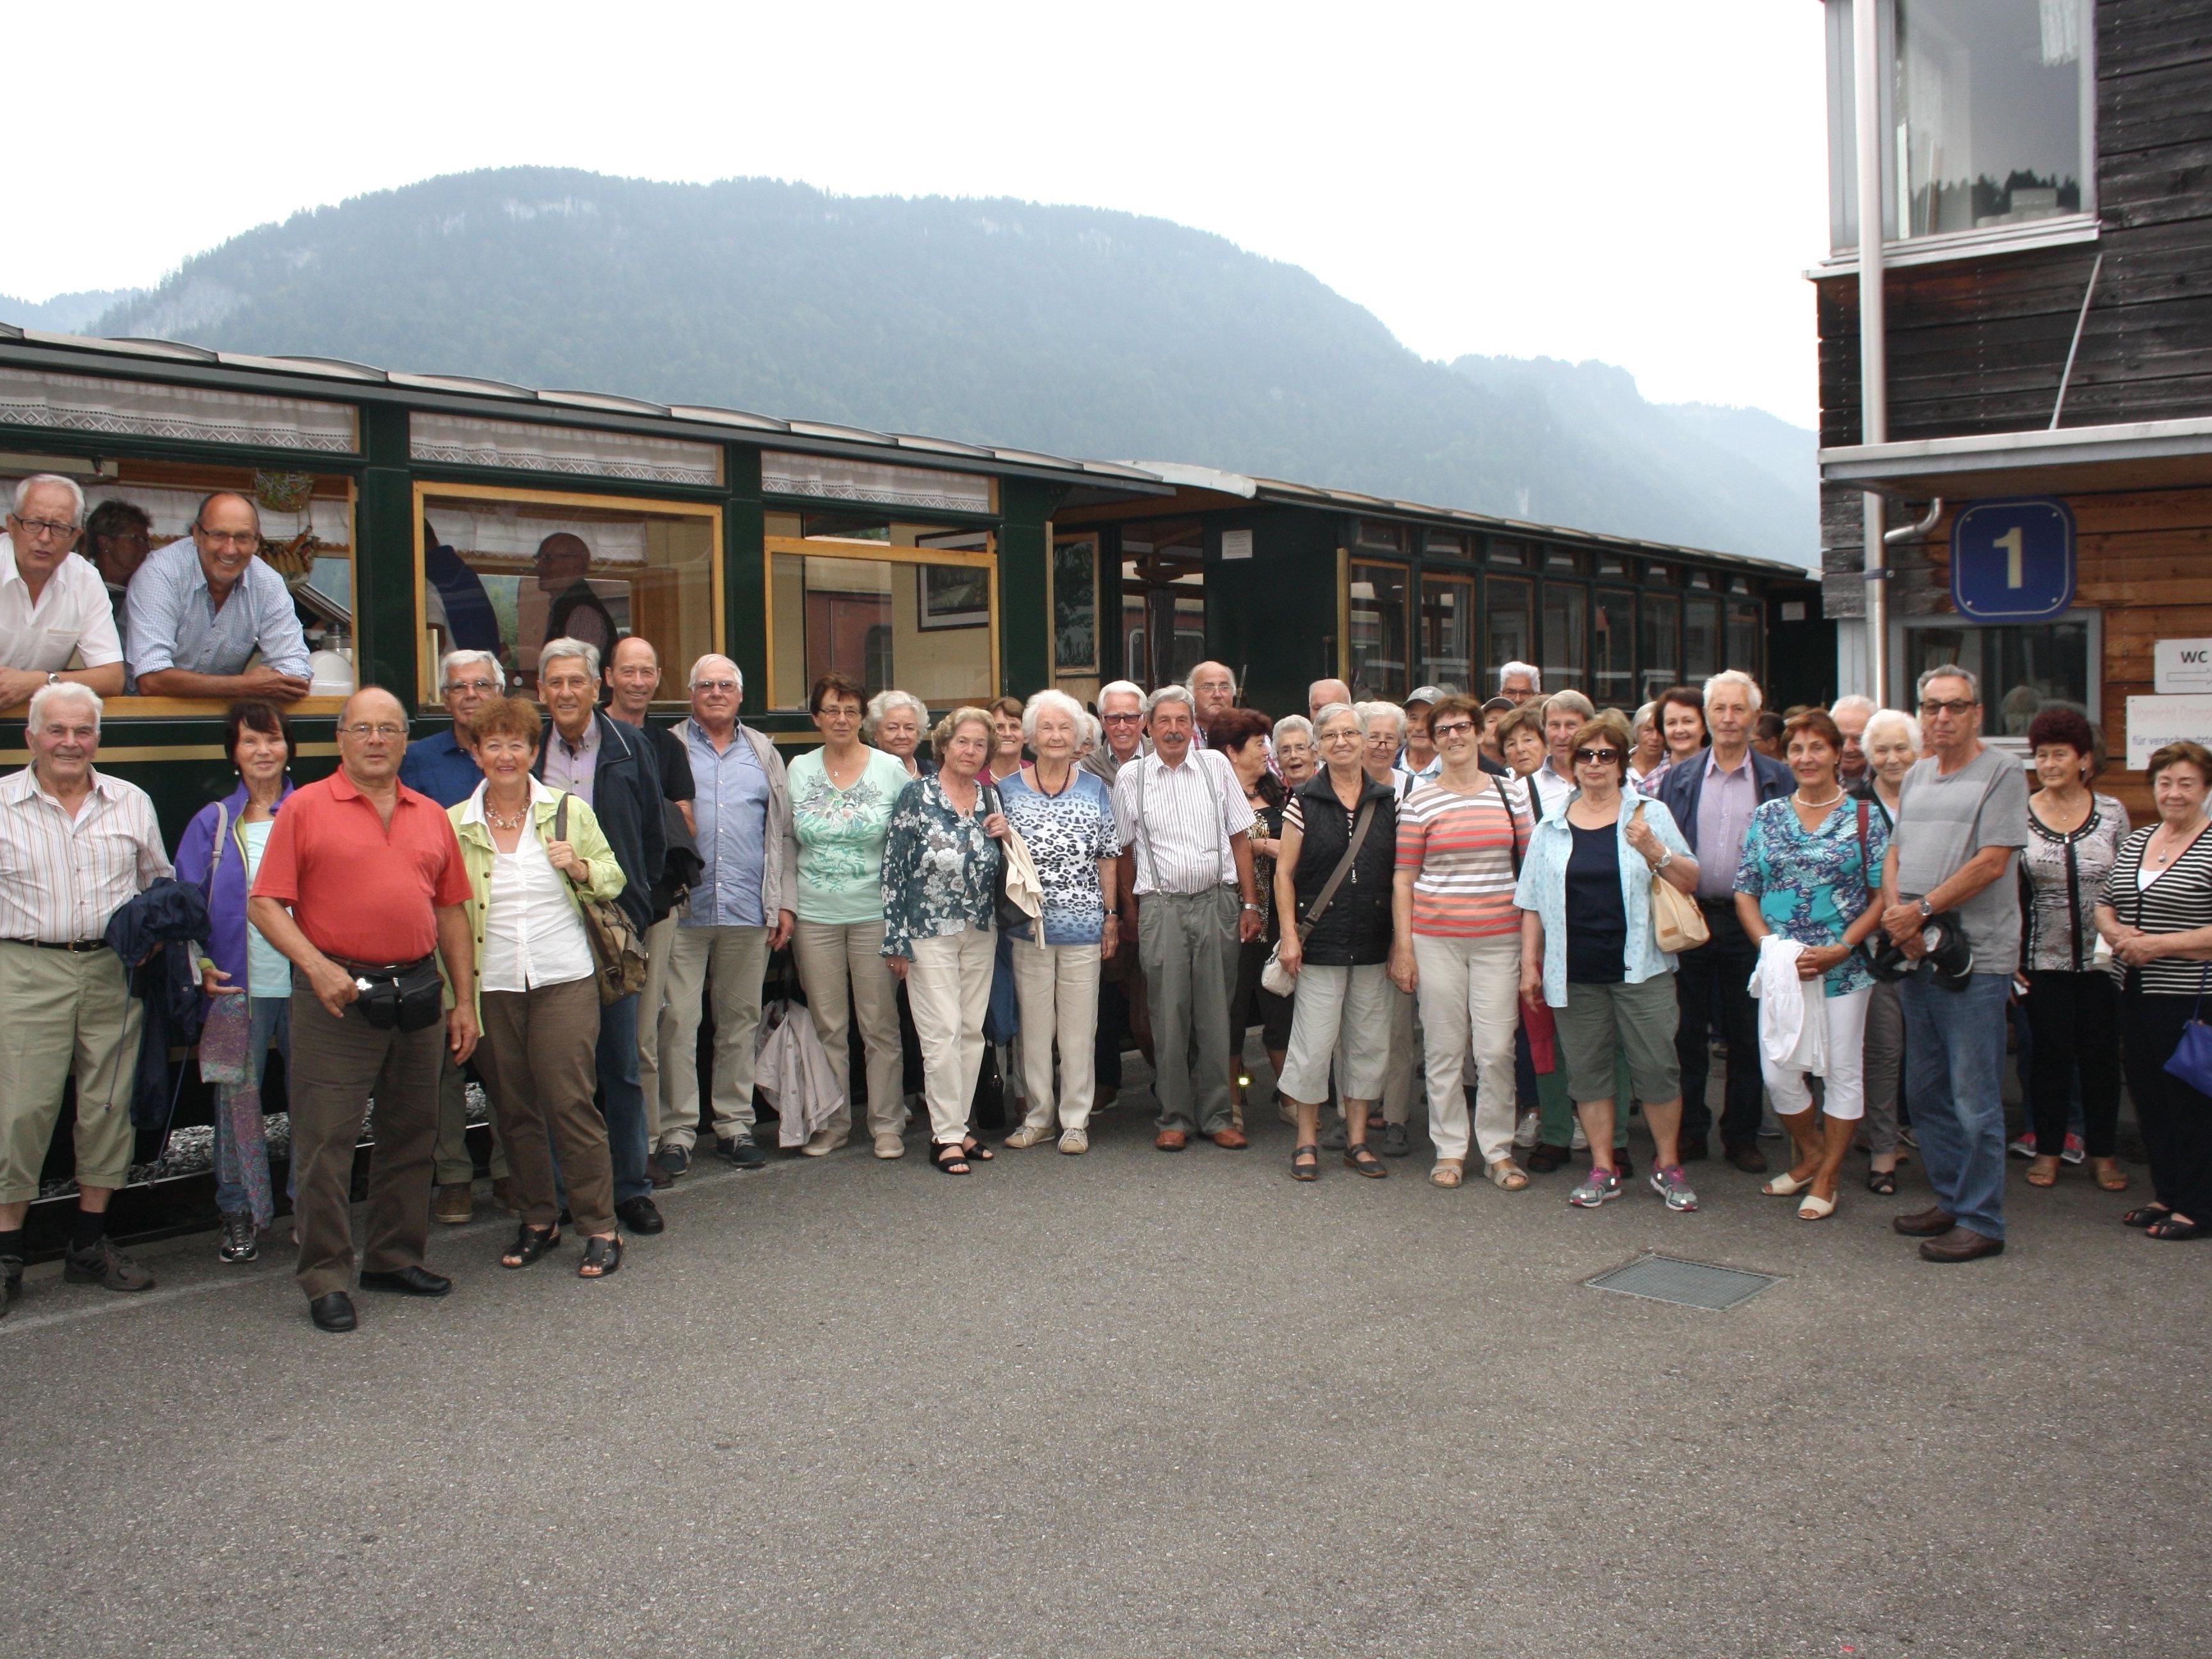 Die Gemeinde Lochau lud ihre Senioren zum alljährlichen traditionellen Ausflug, mit einer Wälderbähnle-Fahrt als besonderem Highlight.